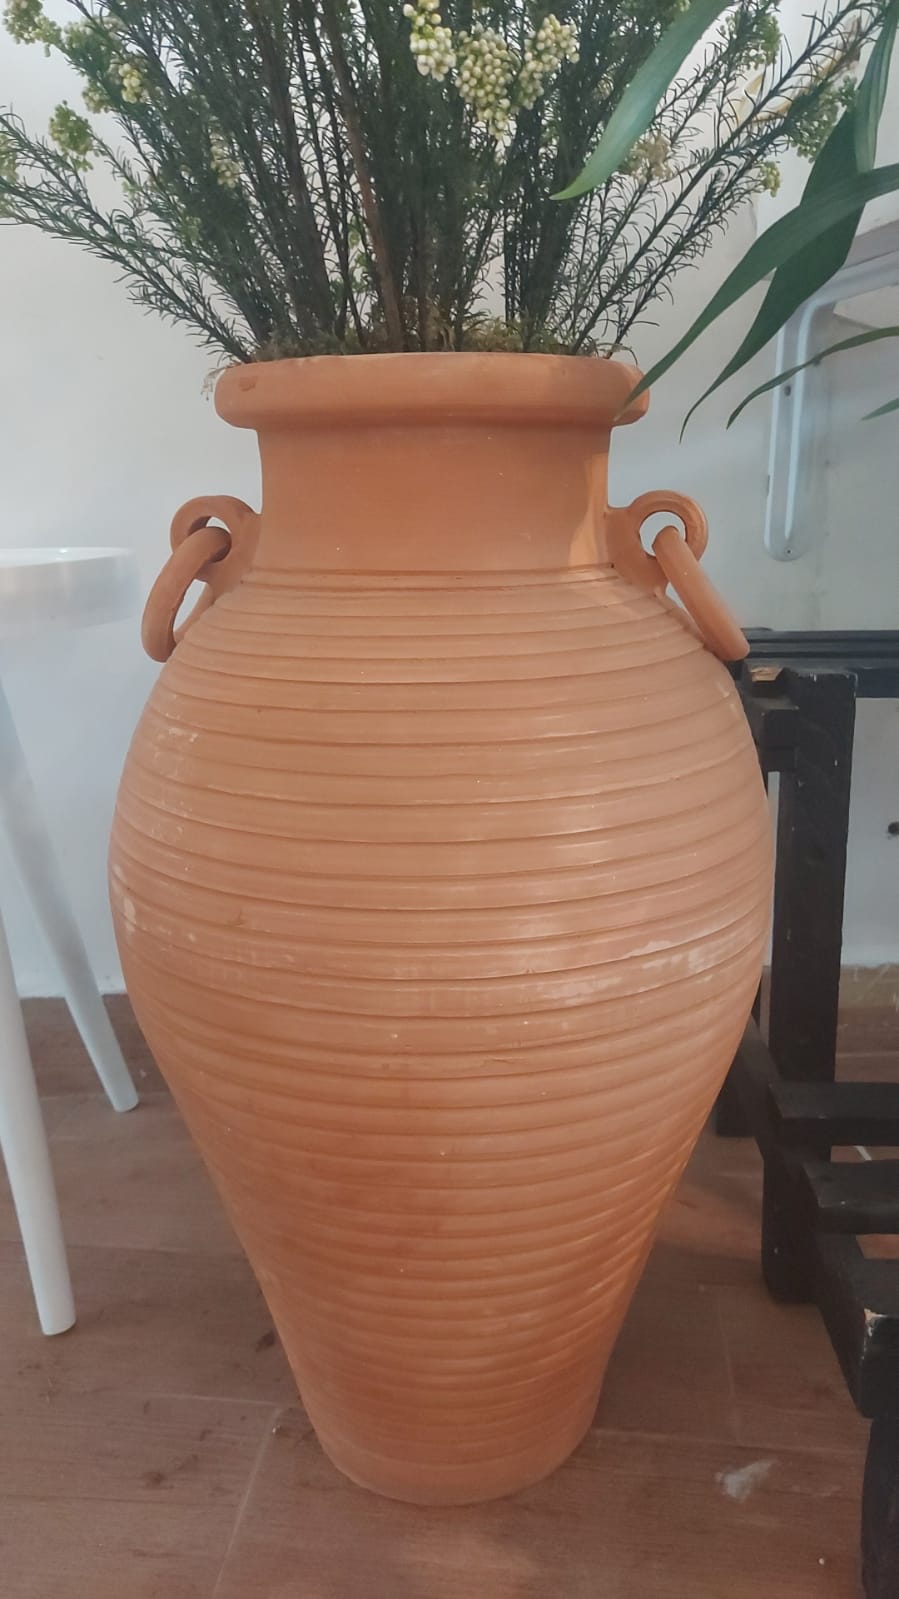 Clay pot 6520